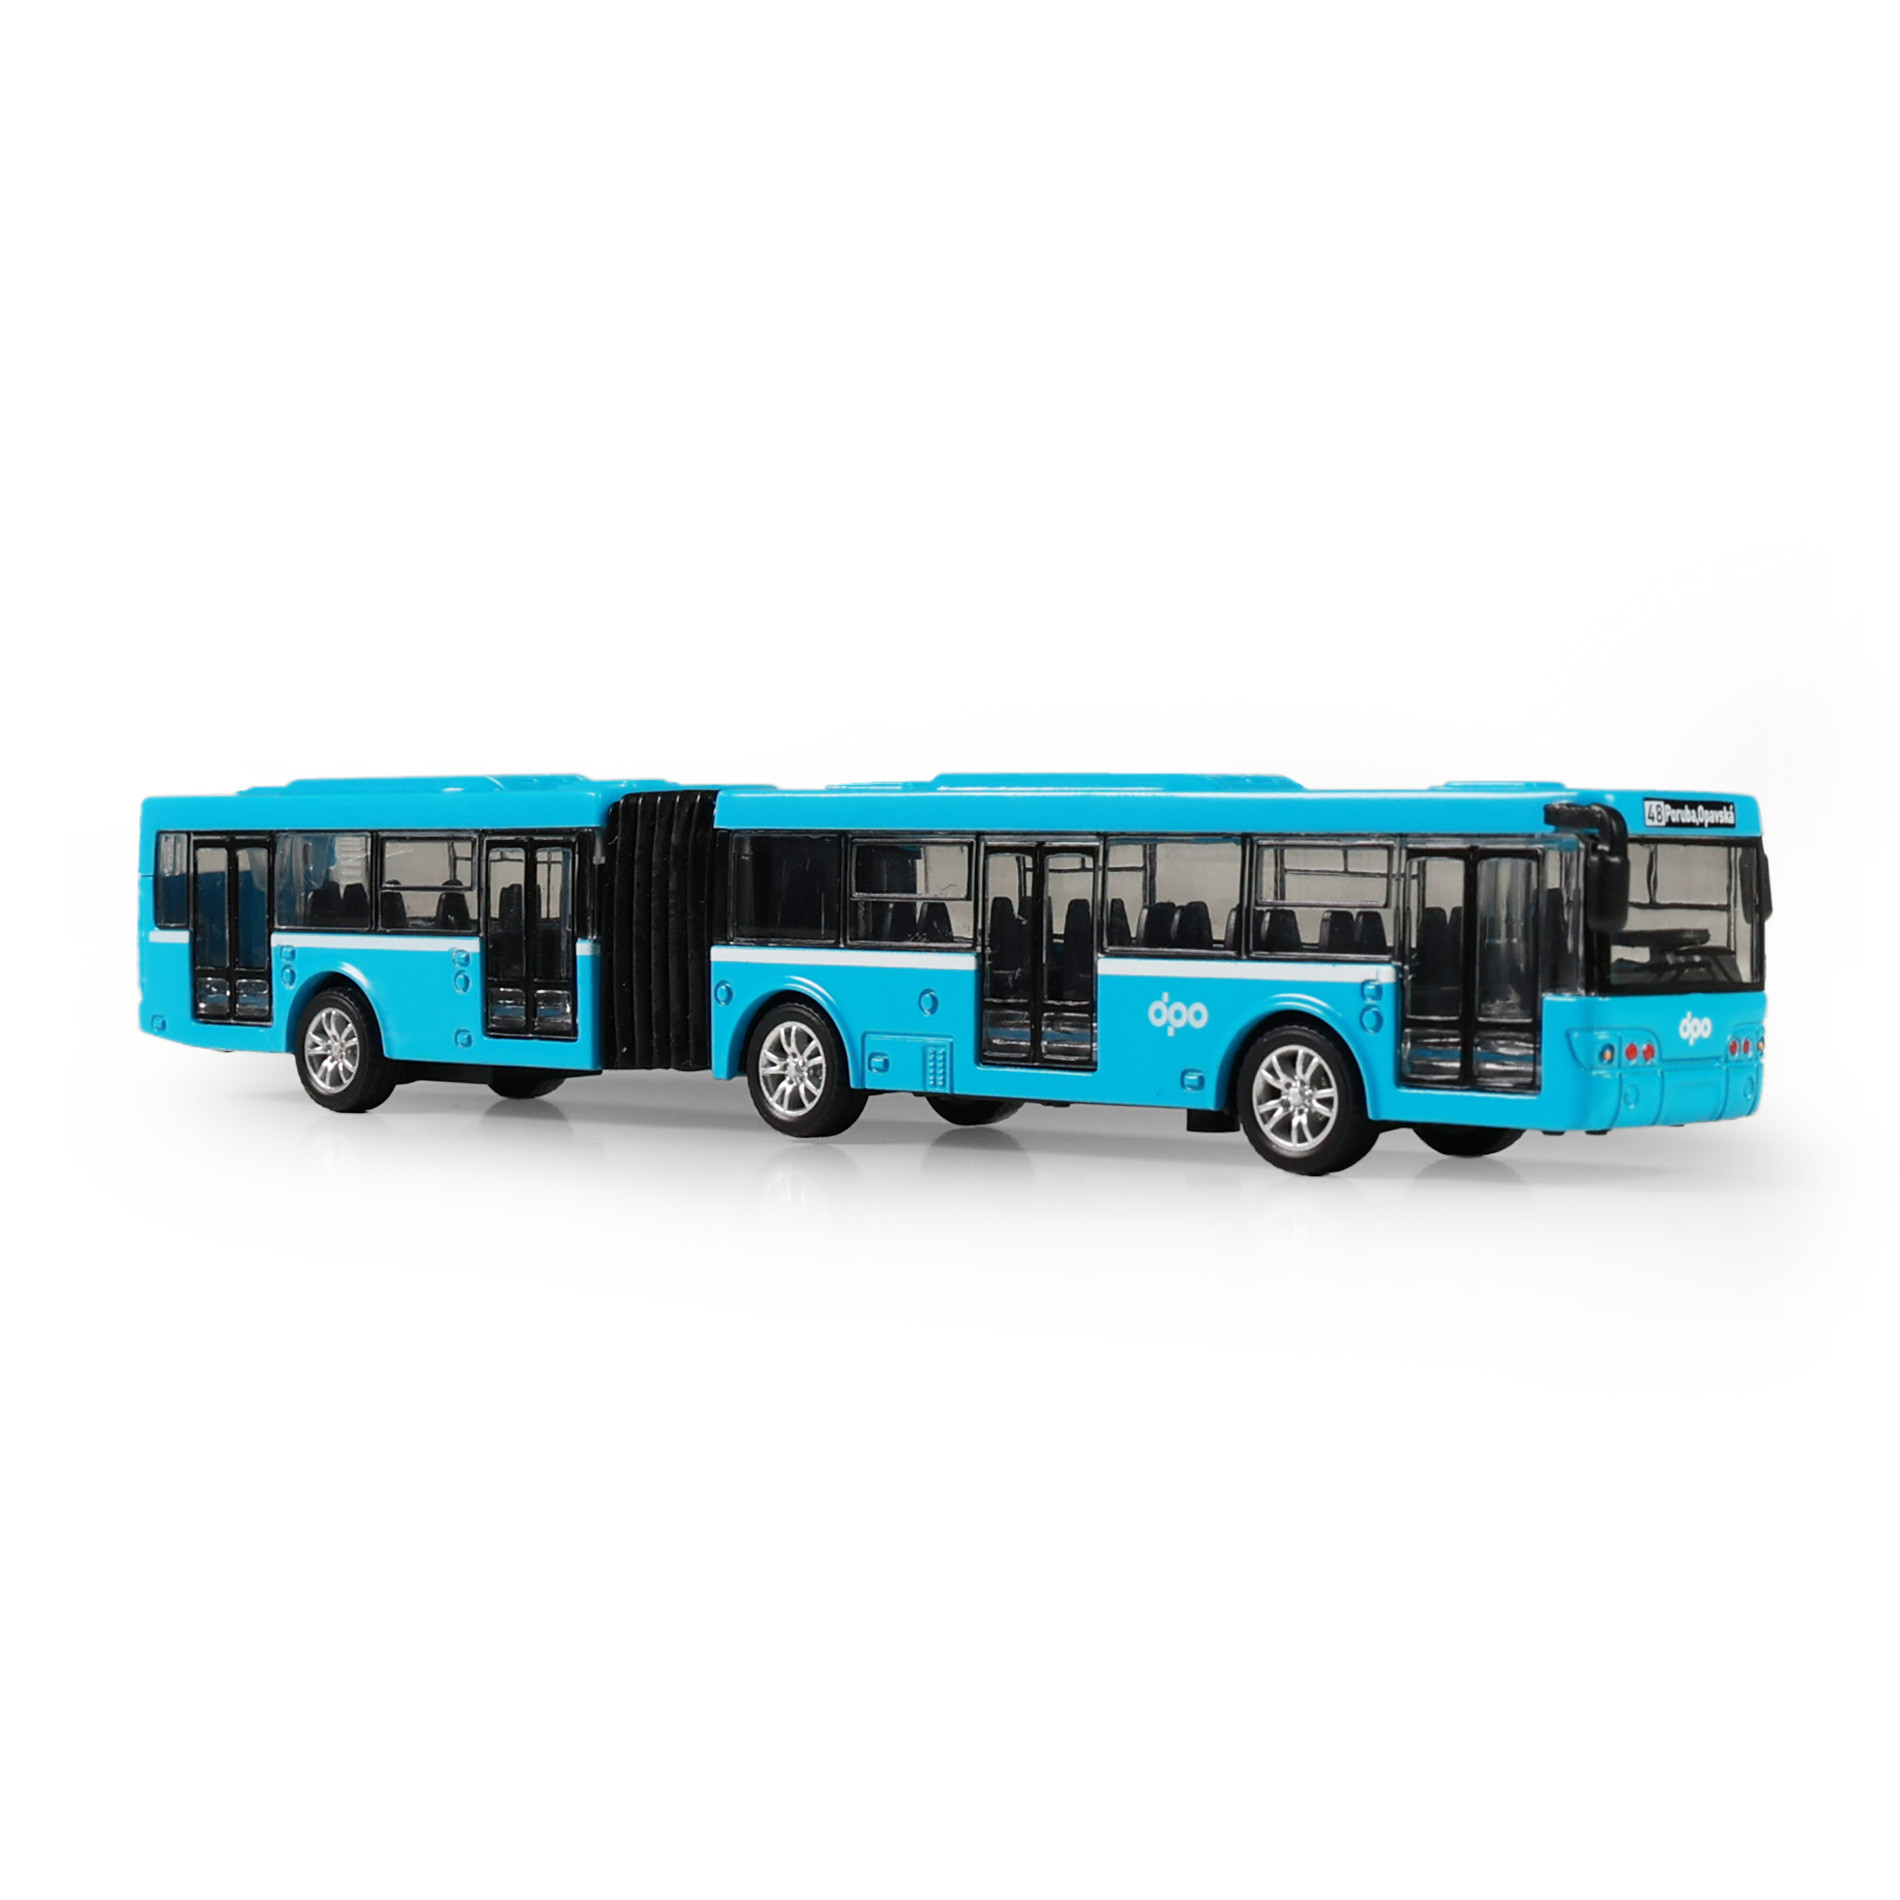 Kovový kloubový autobus DPO Ostrava modrý 18 cm